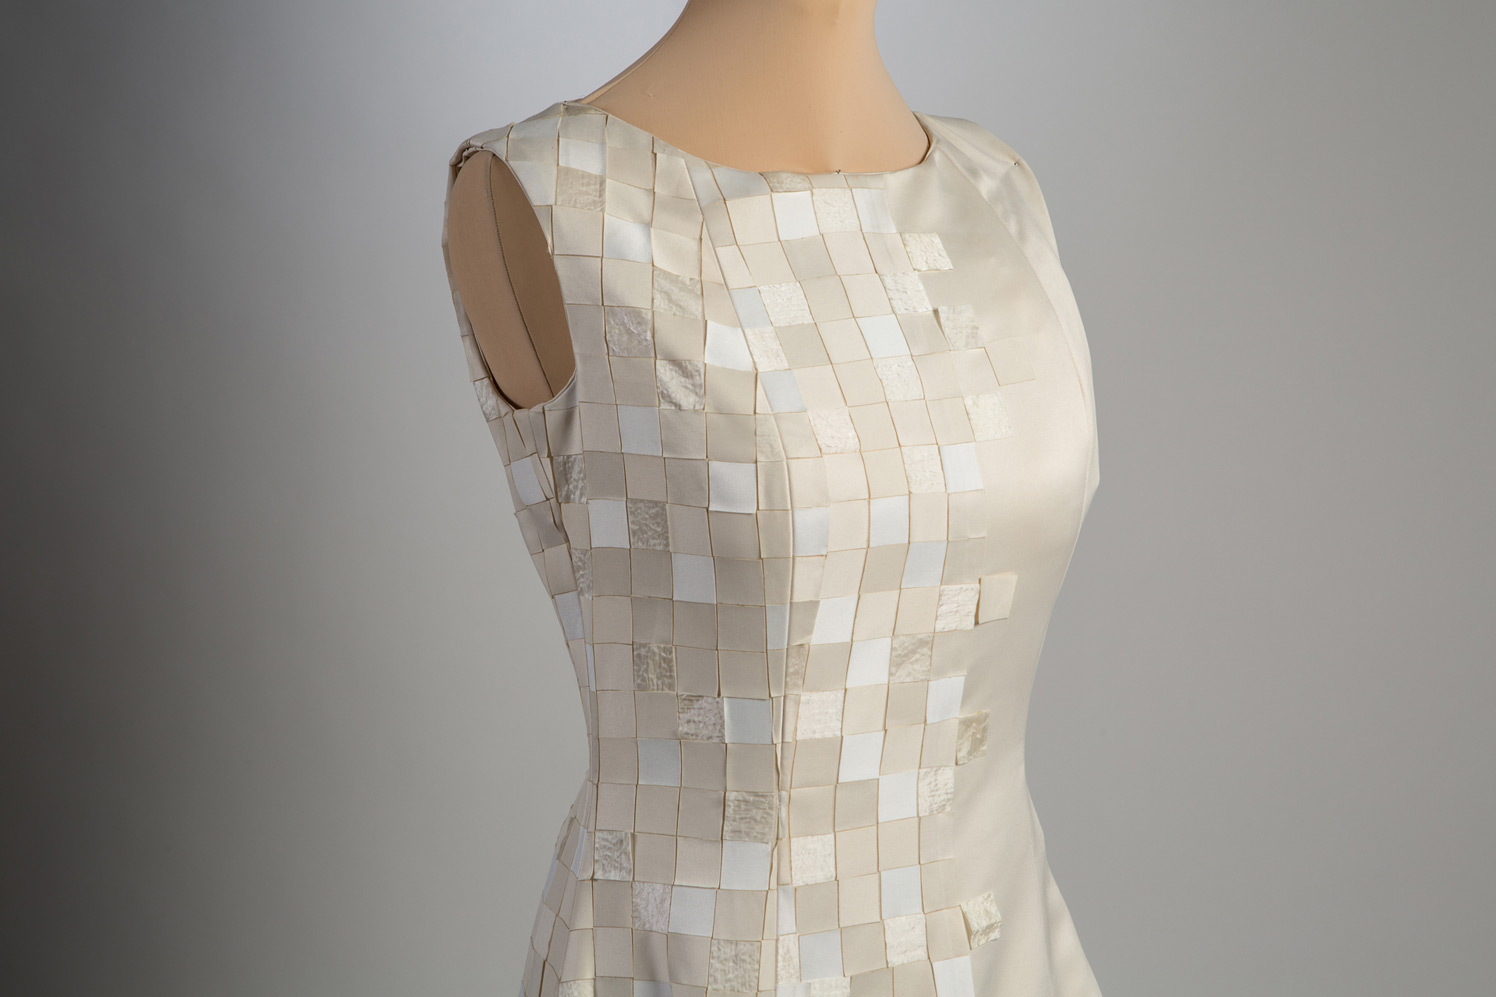 Mosaïque, un abito creato con oltre 3000 quadratini di tessuto, by Matthan Gori.